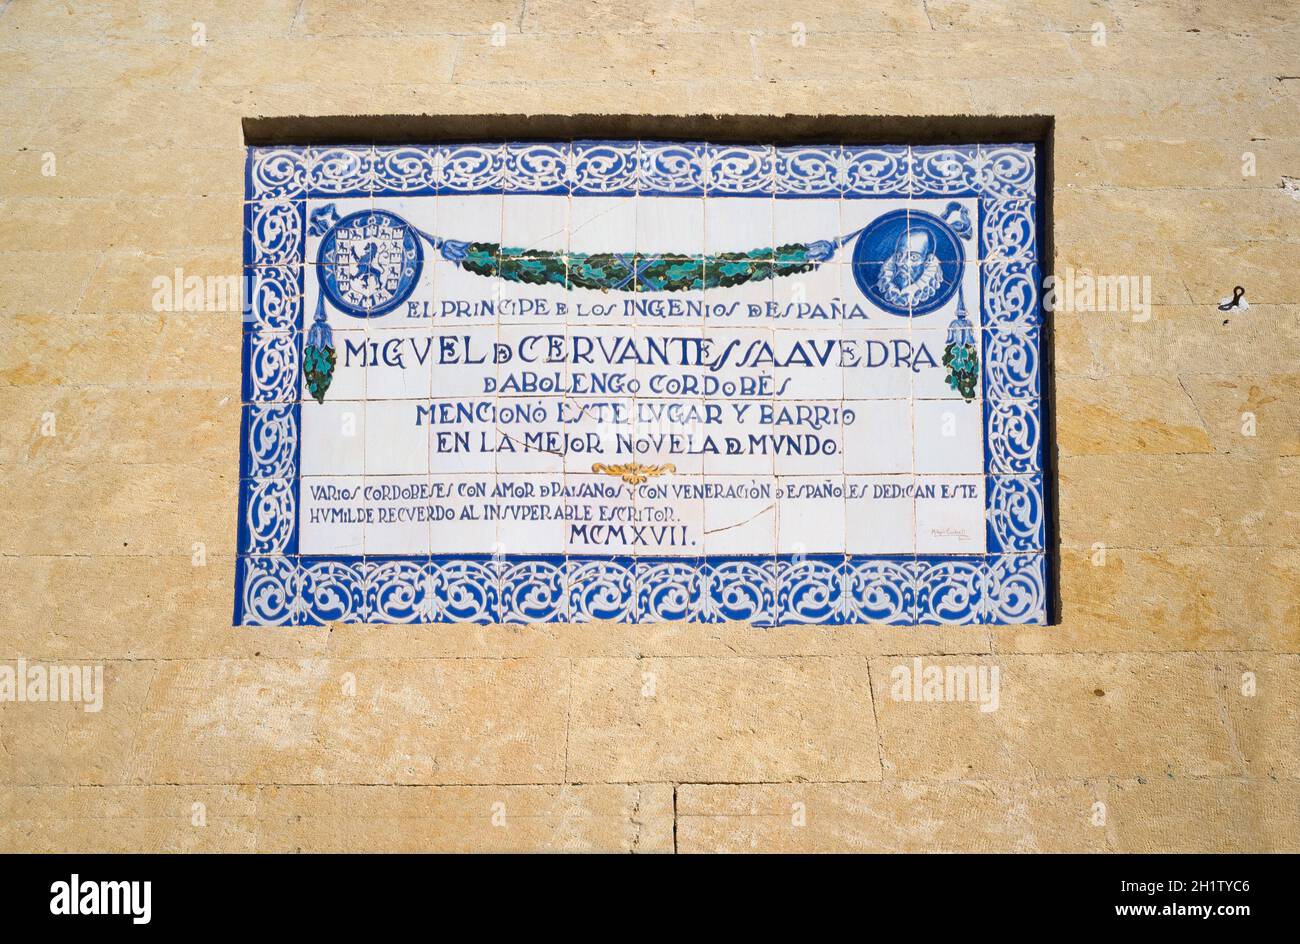 Cordoue, Espagne - 7 décembre 2018 : plaque commémorative Miguel de Cervantes Saavedra.Plaza del Potro de Cordoba, Espagne Banque D'Images